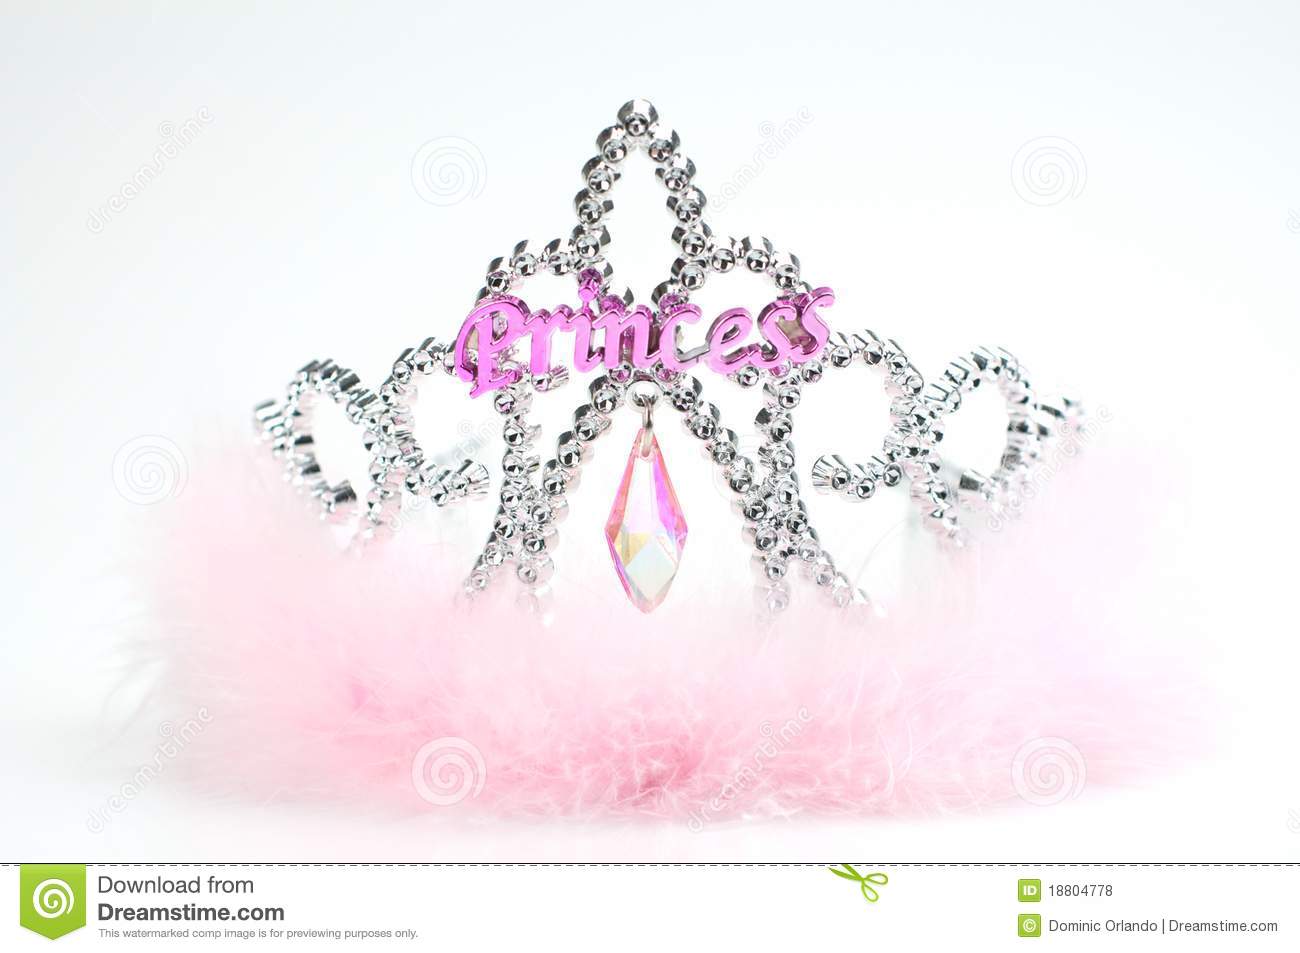 Princess Tiara And Wand Royalty Free Stock Photos   Image  18804778